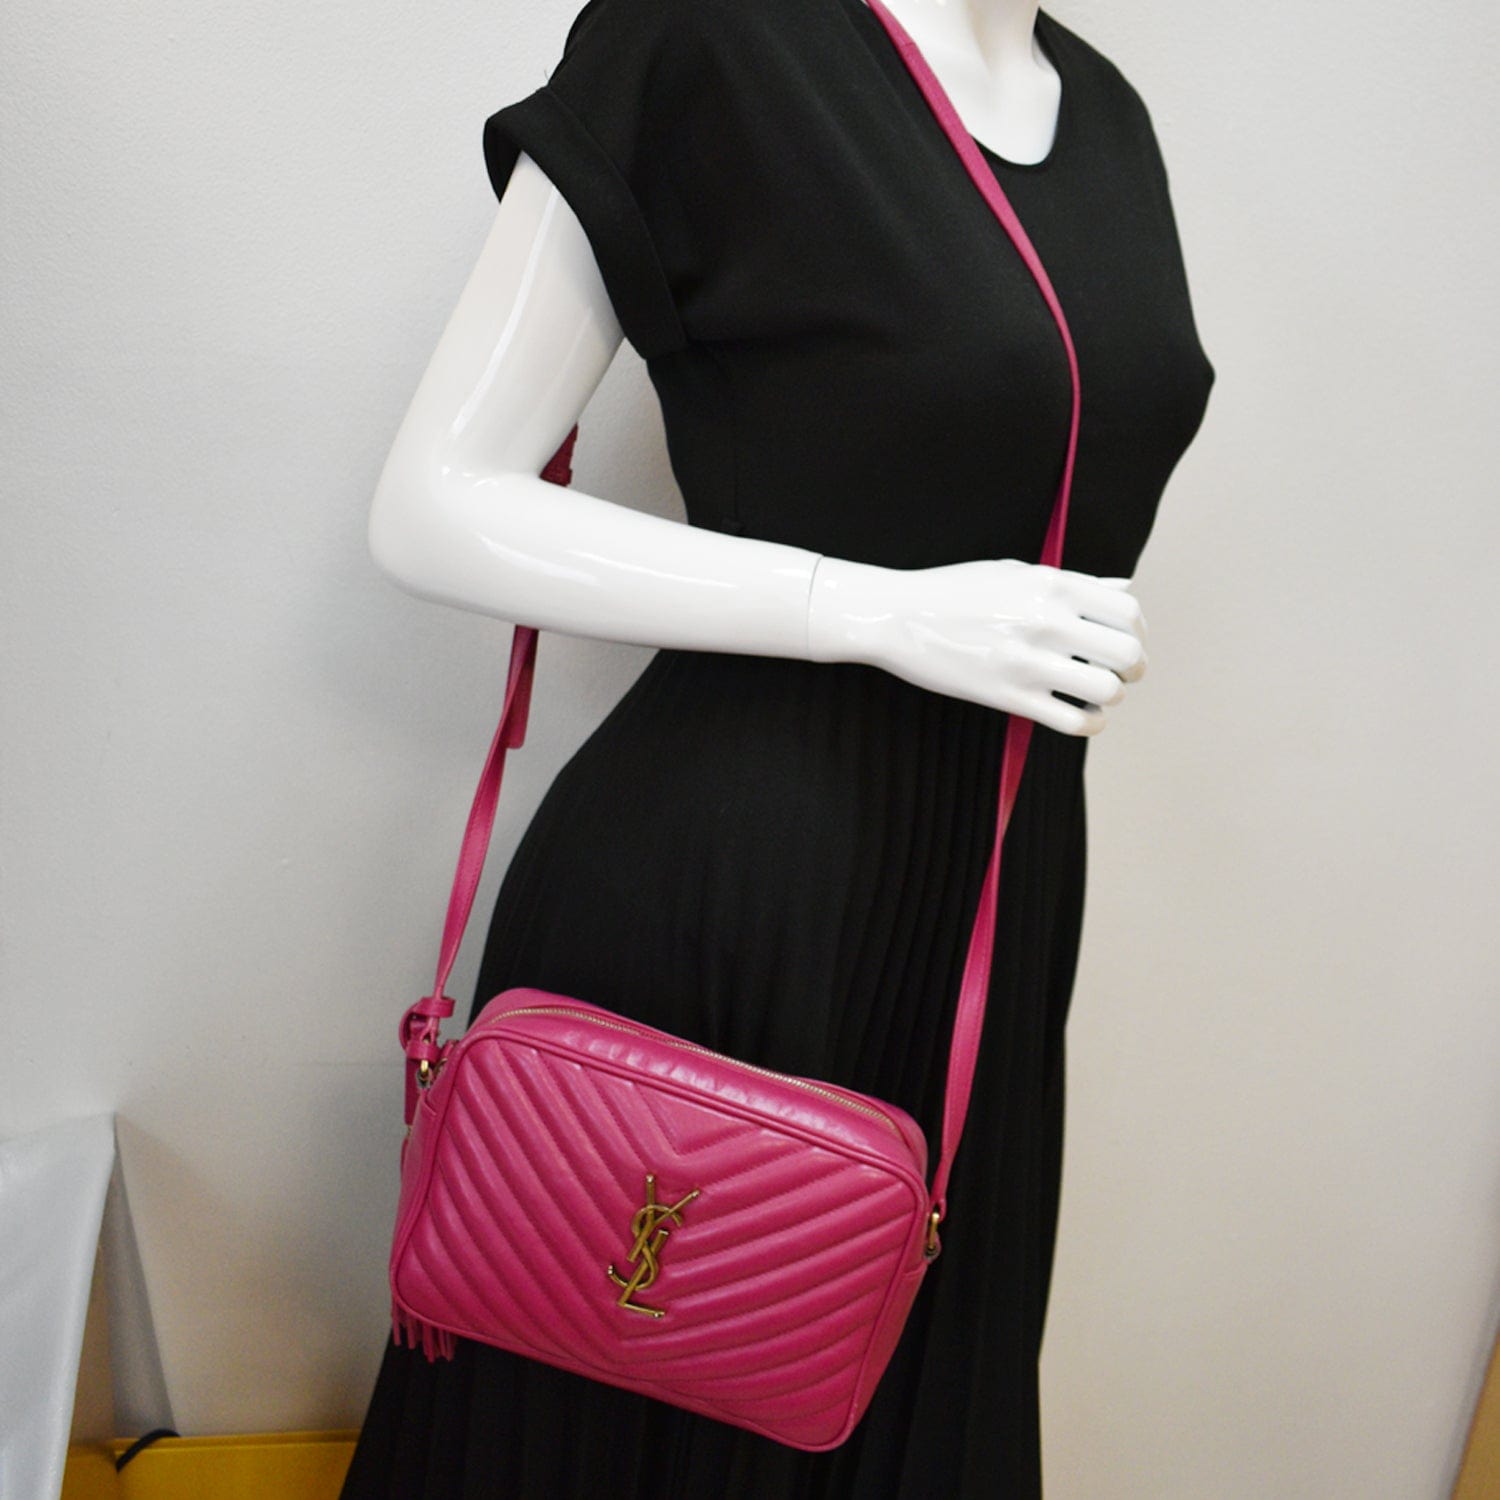 Lou Handbag Collection for Women, Saint Laurent